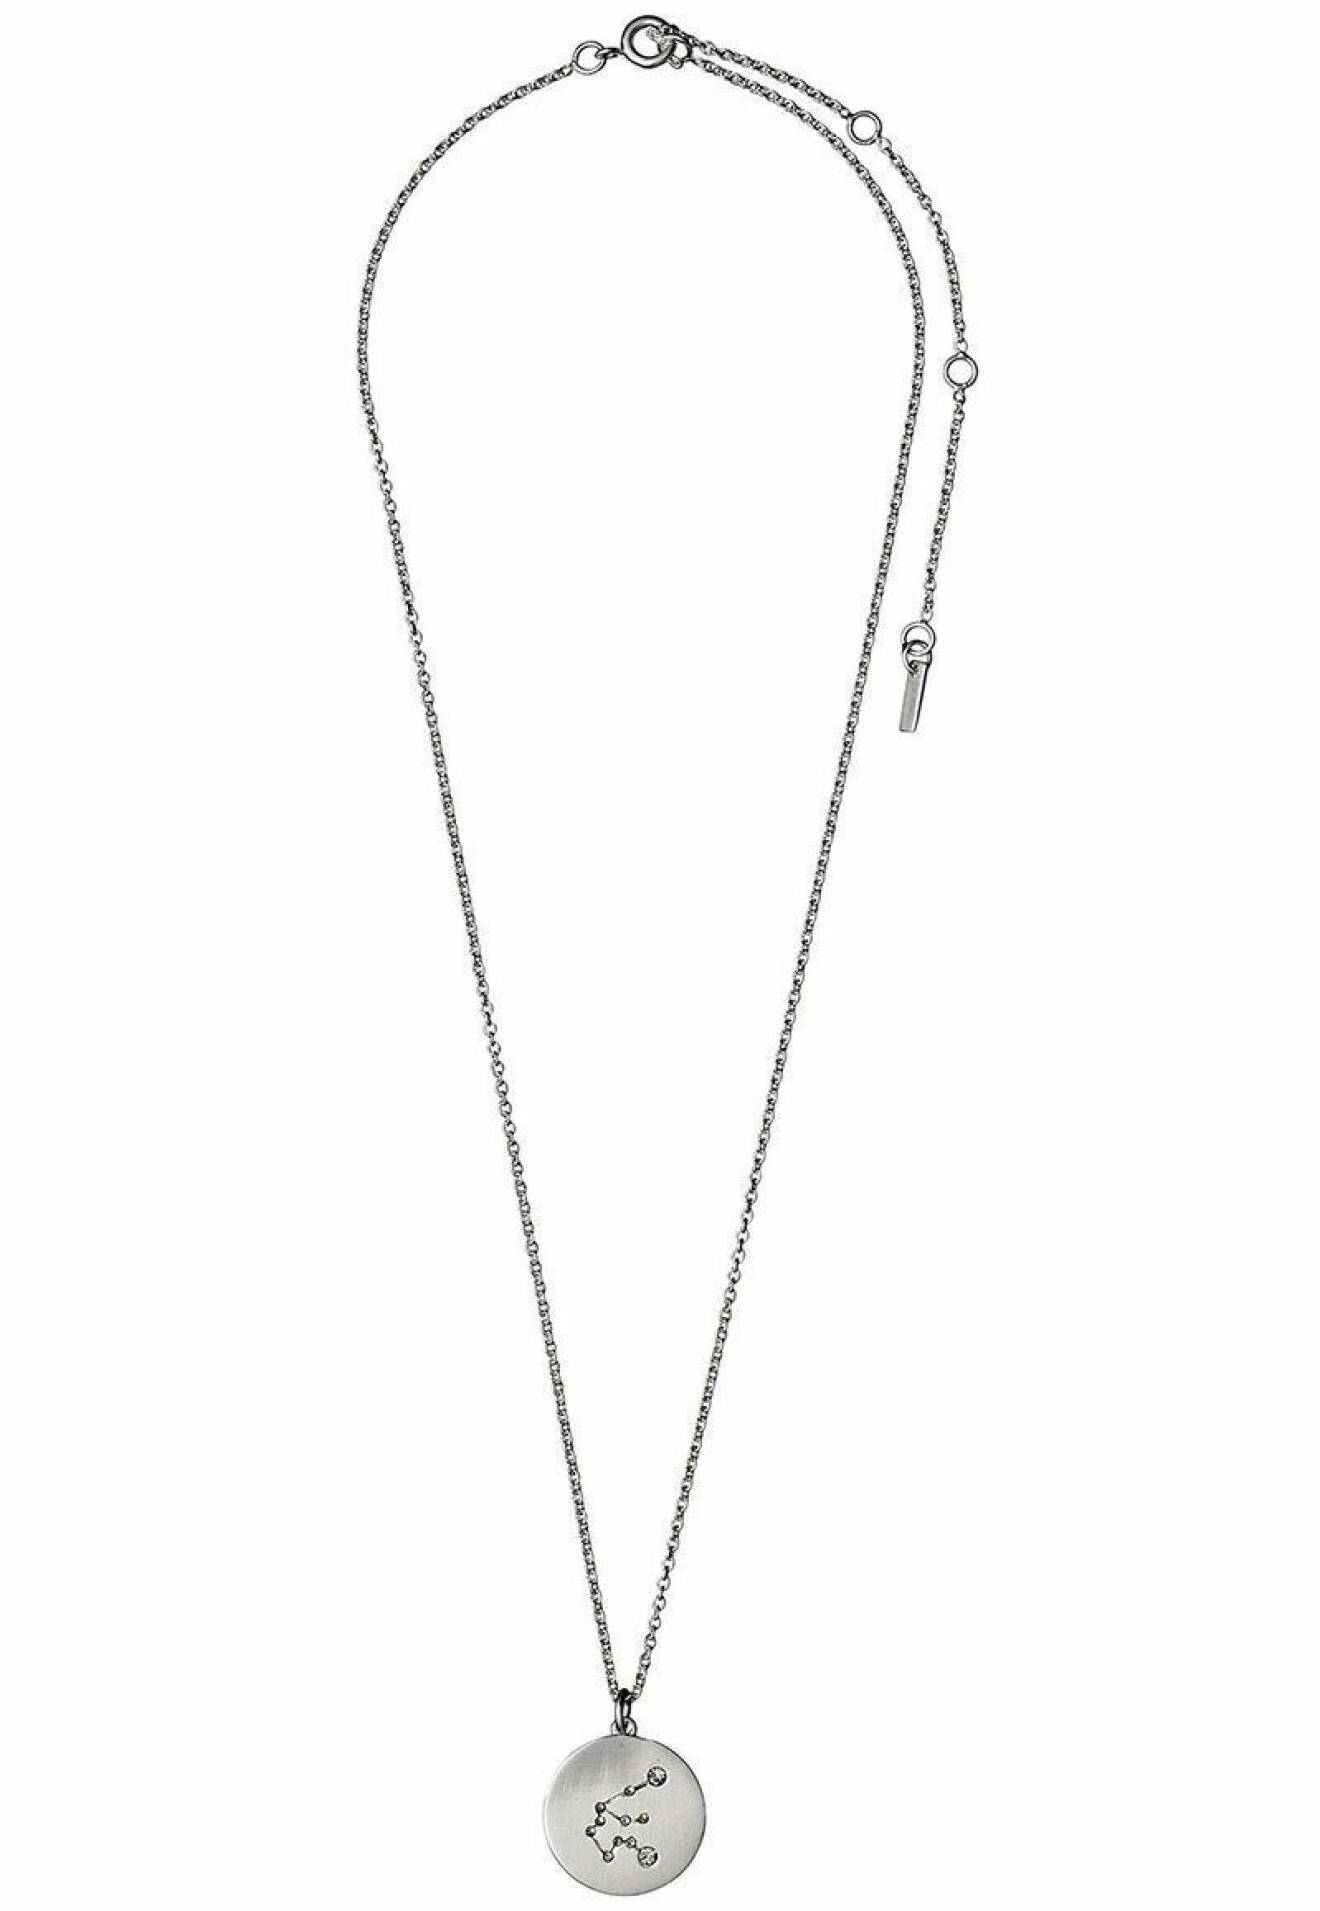 Halsband med stjärntecknet vattumannen från Pilgrim